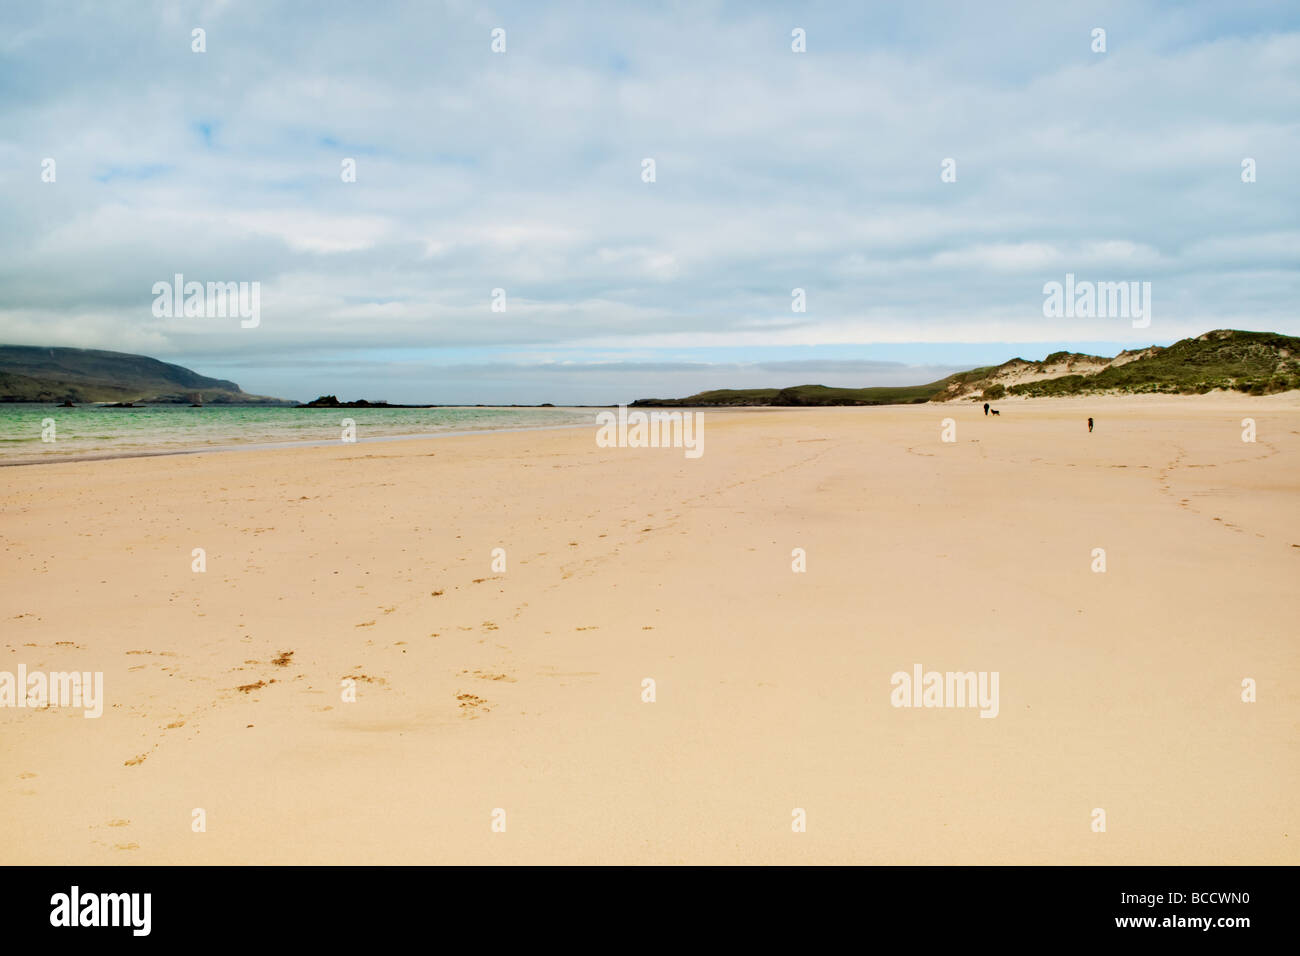 Plage de sable et la baie de Balnakeil Bay, Durness, Sutherland en Écosse avec man walking dogs dans la distance Banque D'Images